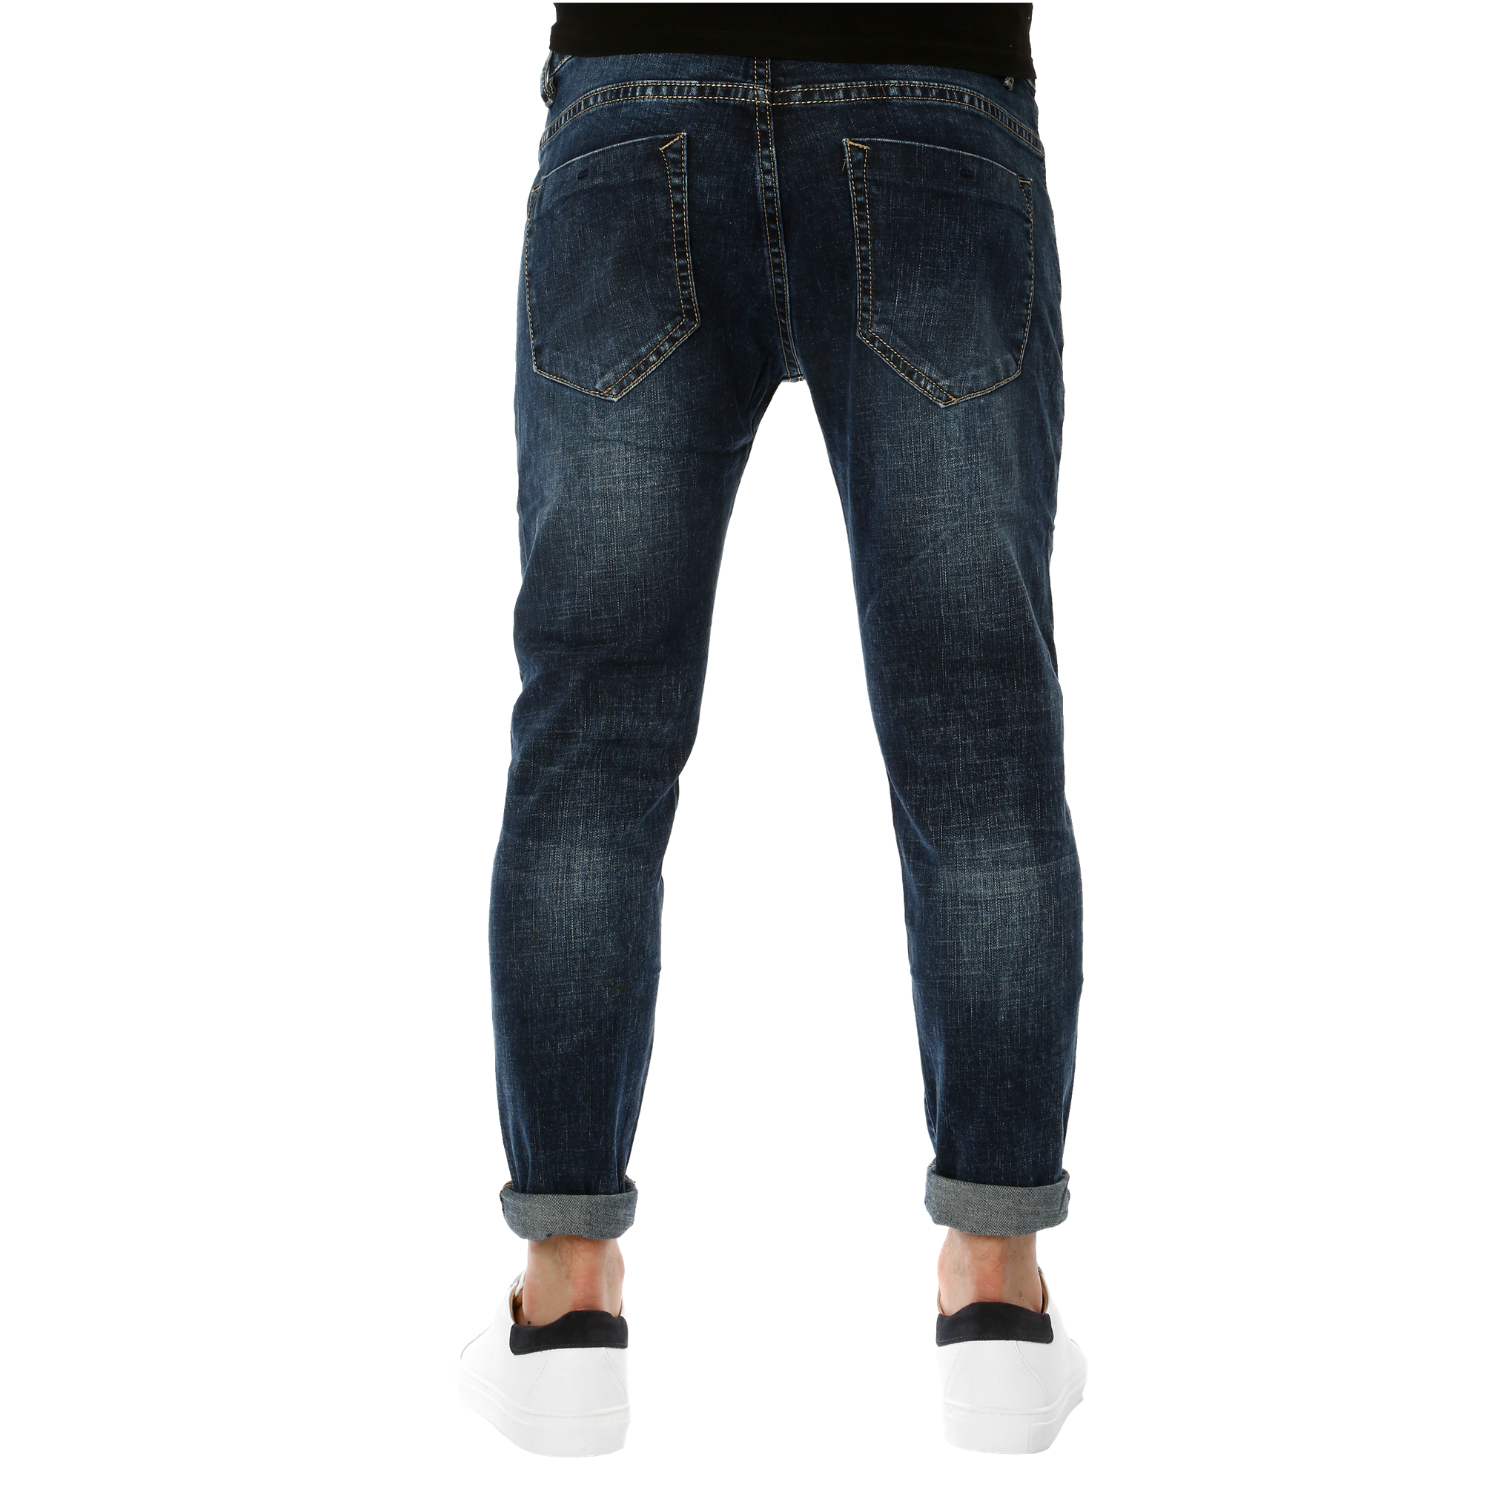 Jeans Uomo Slim fit Blu Scuro Pantaloni 5 Tasche Denim Casual